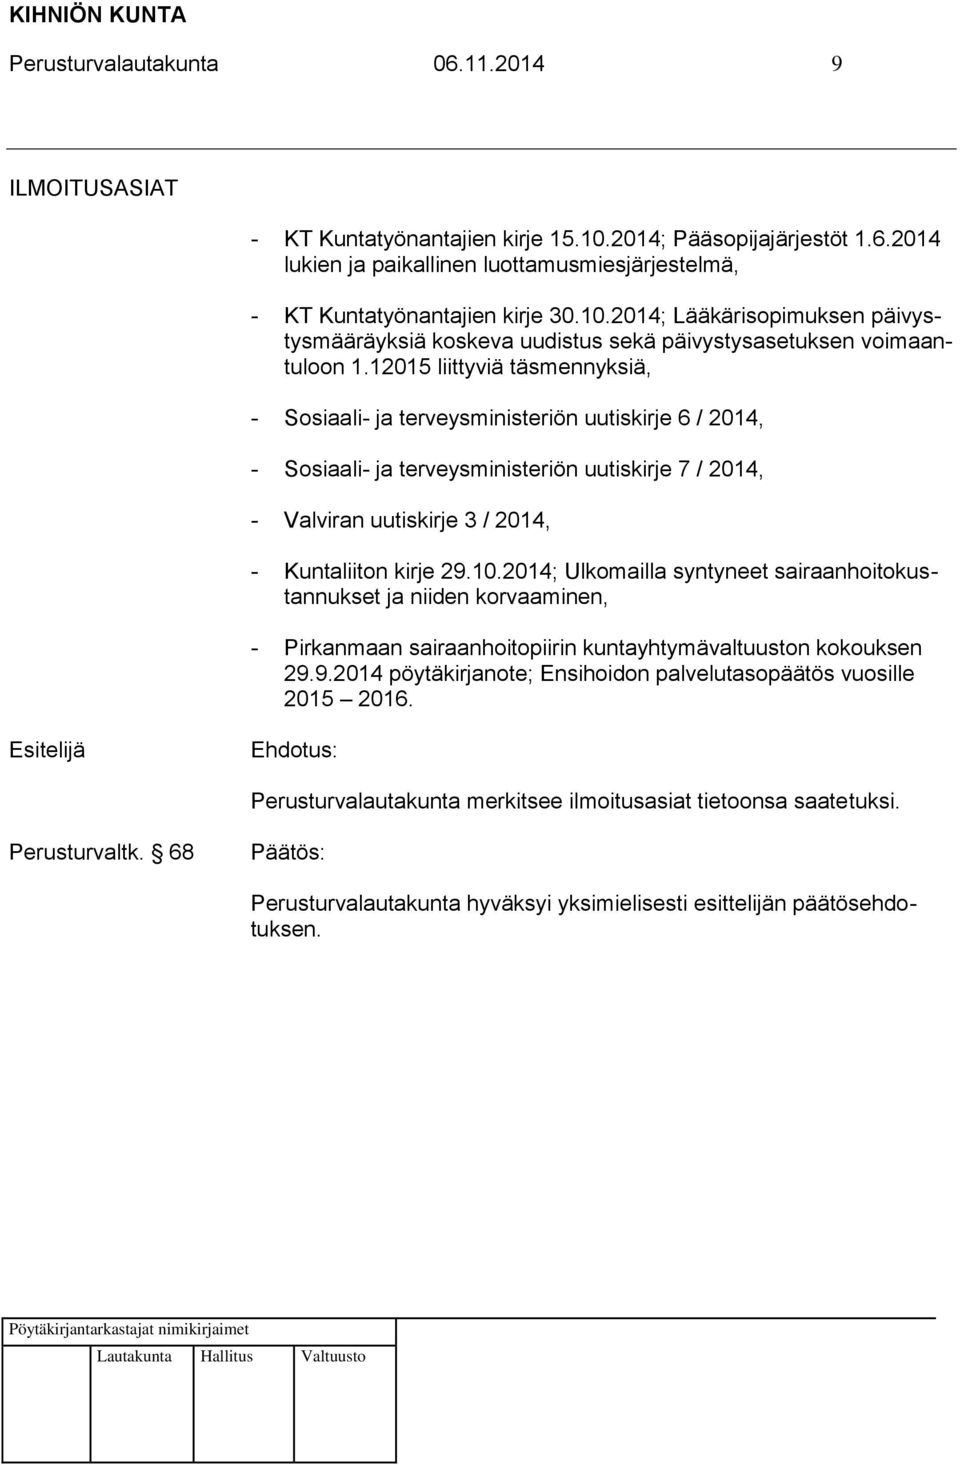 2014; Ulkomailla syntyneet sairaanhoitokustannukset ja niiden korvaaminen, - Pirkanmaan sairaanhoitopiirin kuntayhtymävaltuuston kokouksen 29.